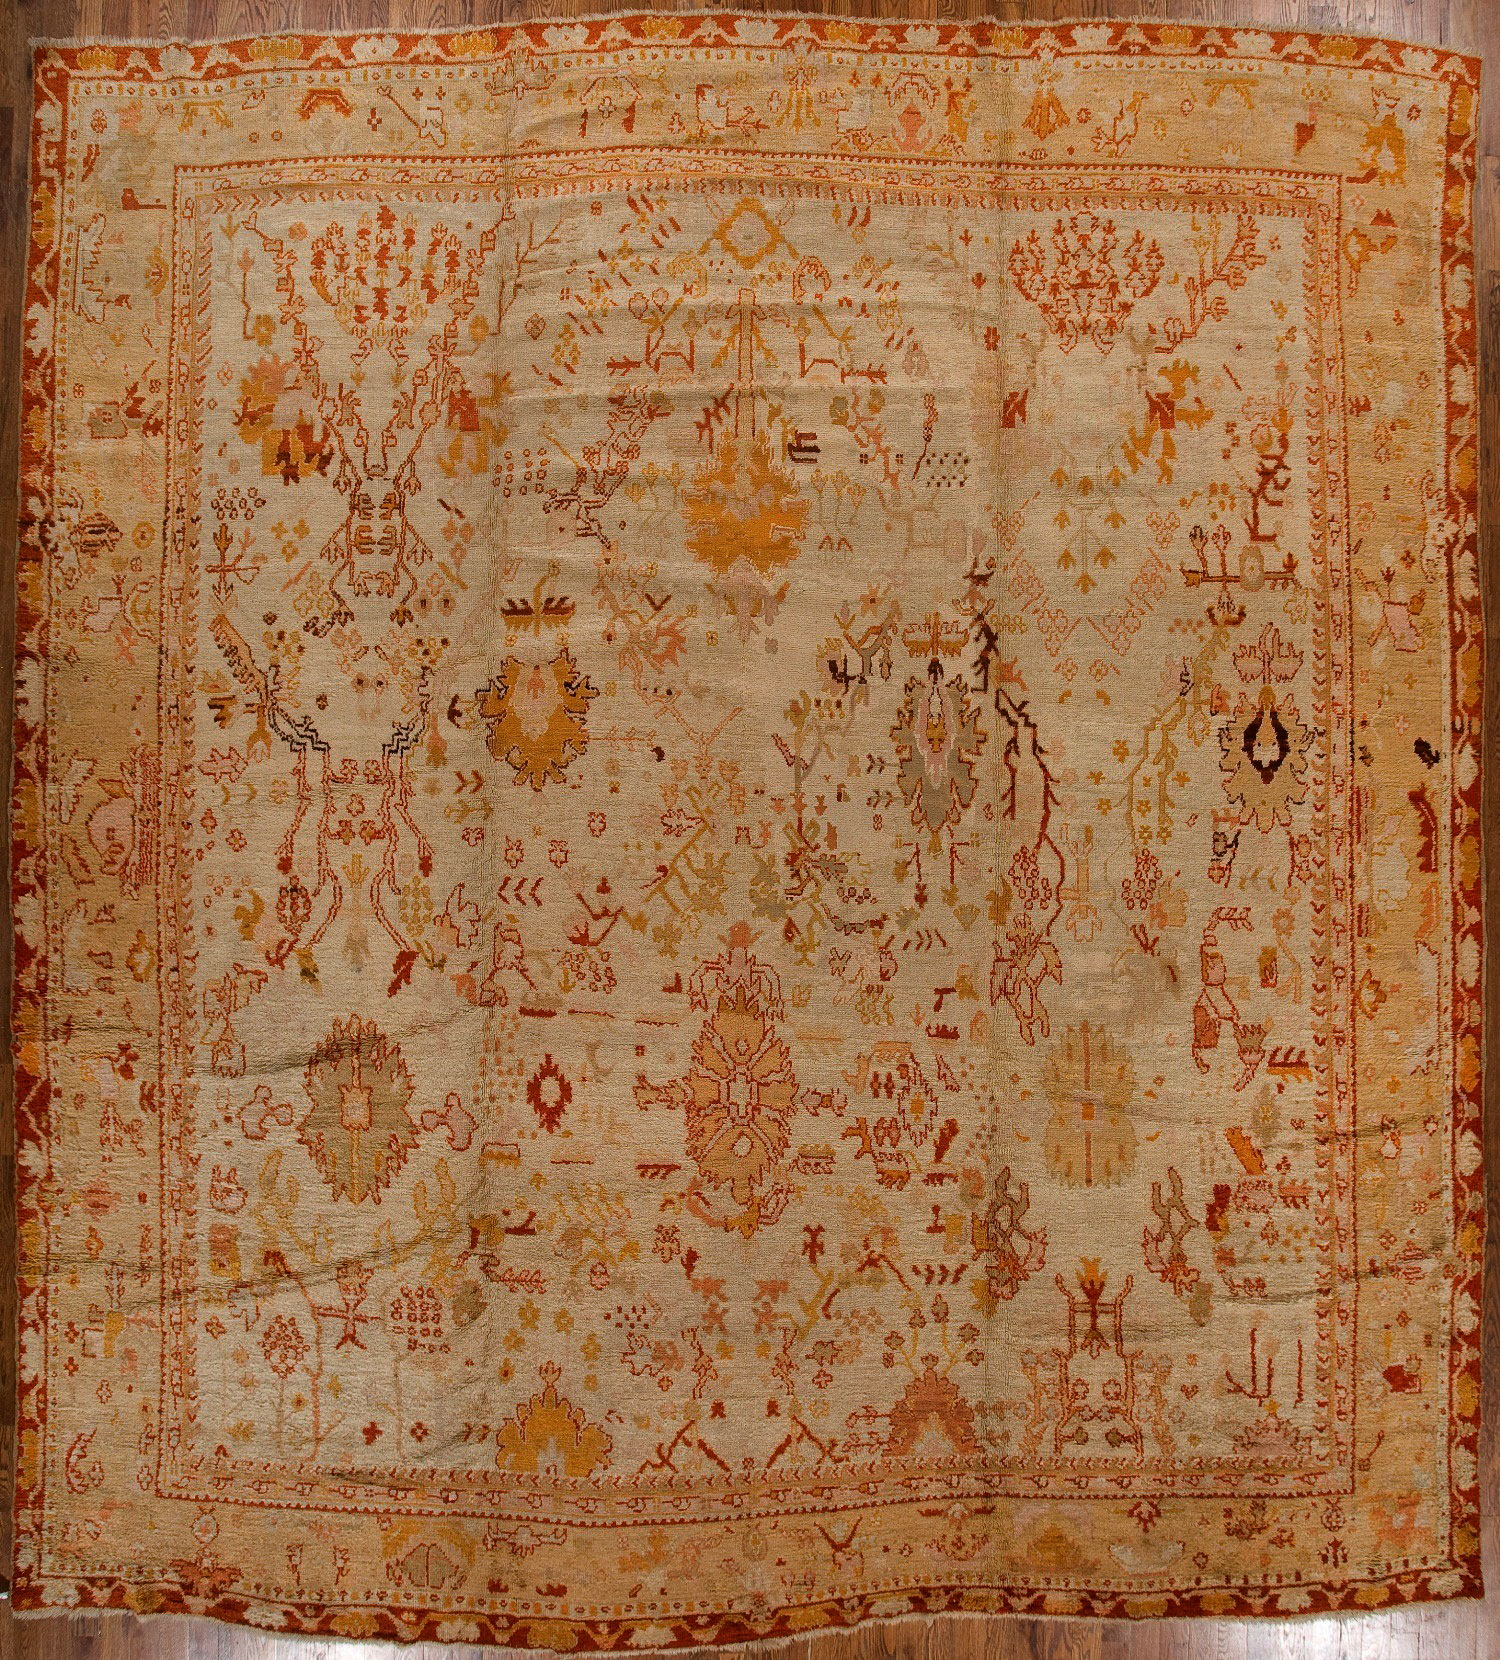 Antique oushak Carpet - # 52001